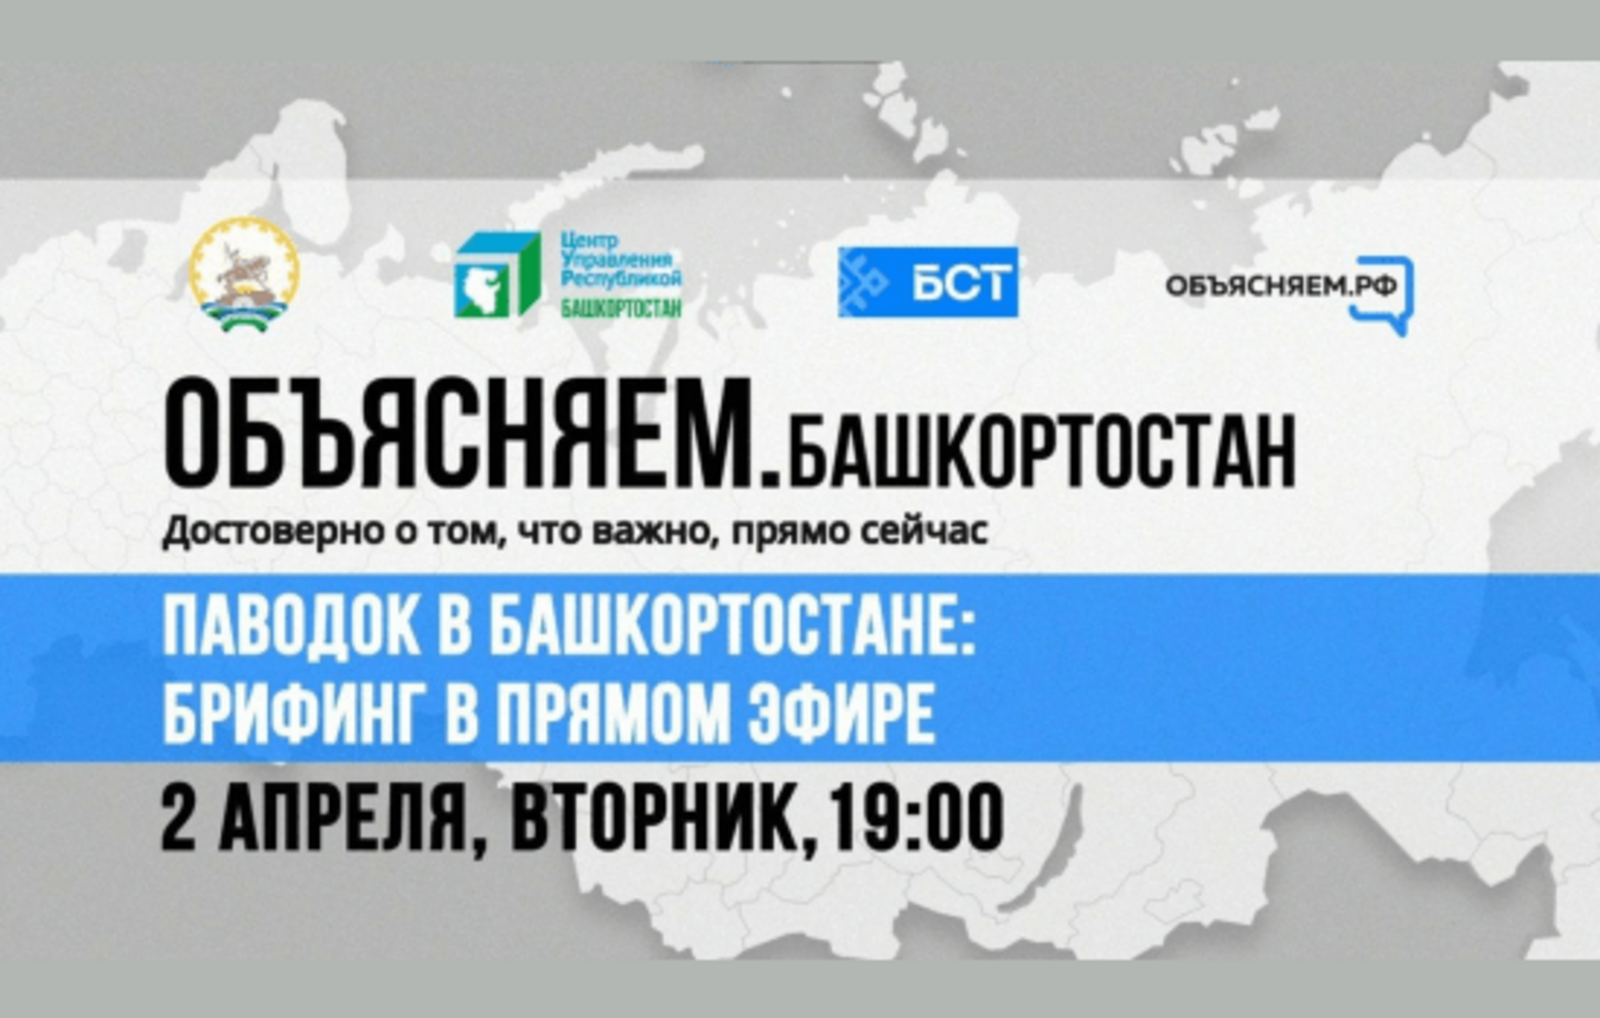 Паводок в Башкортостане: брифинг в прямом эфире